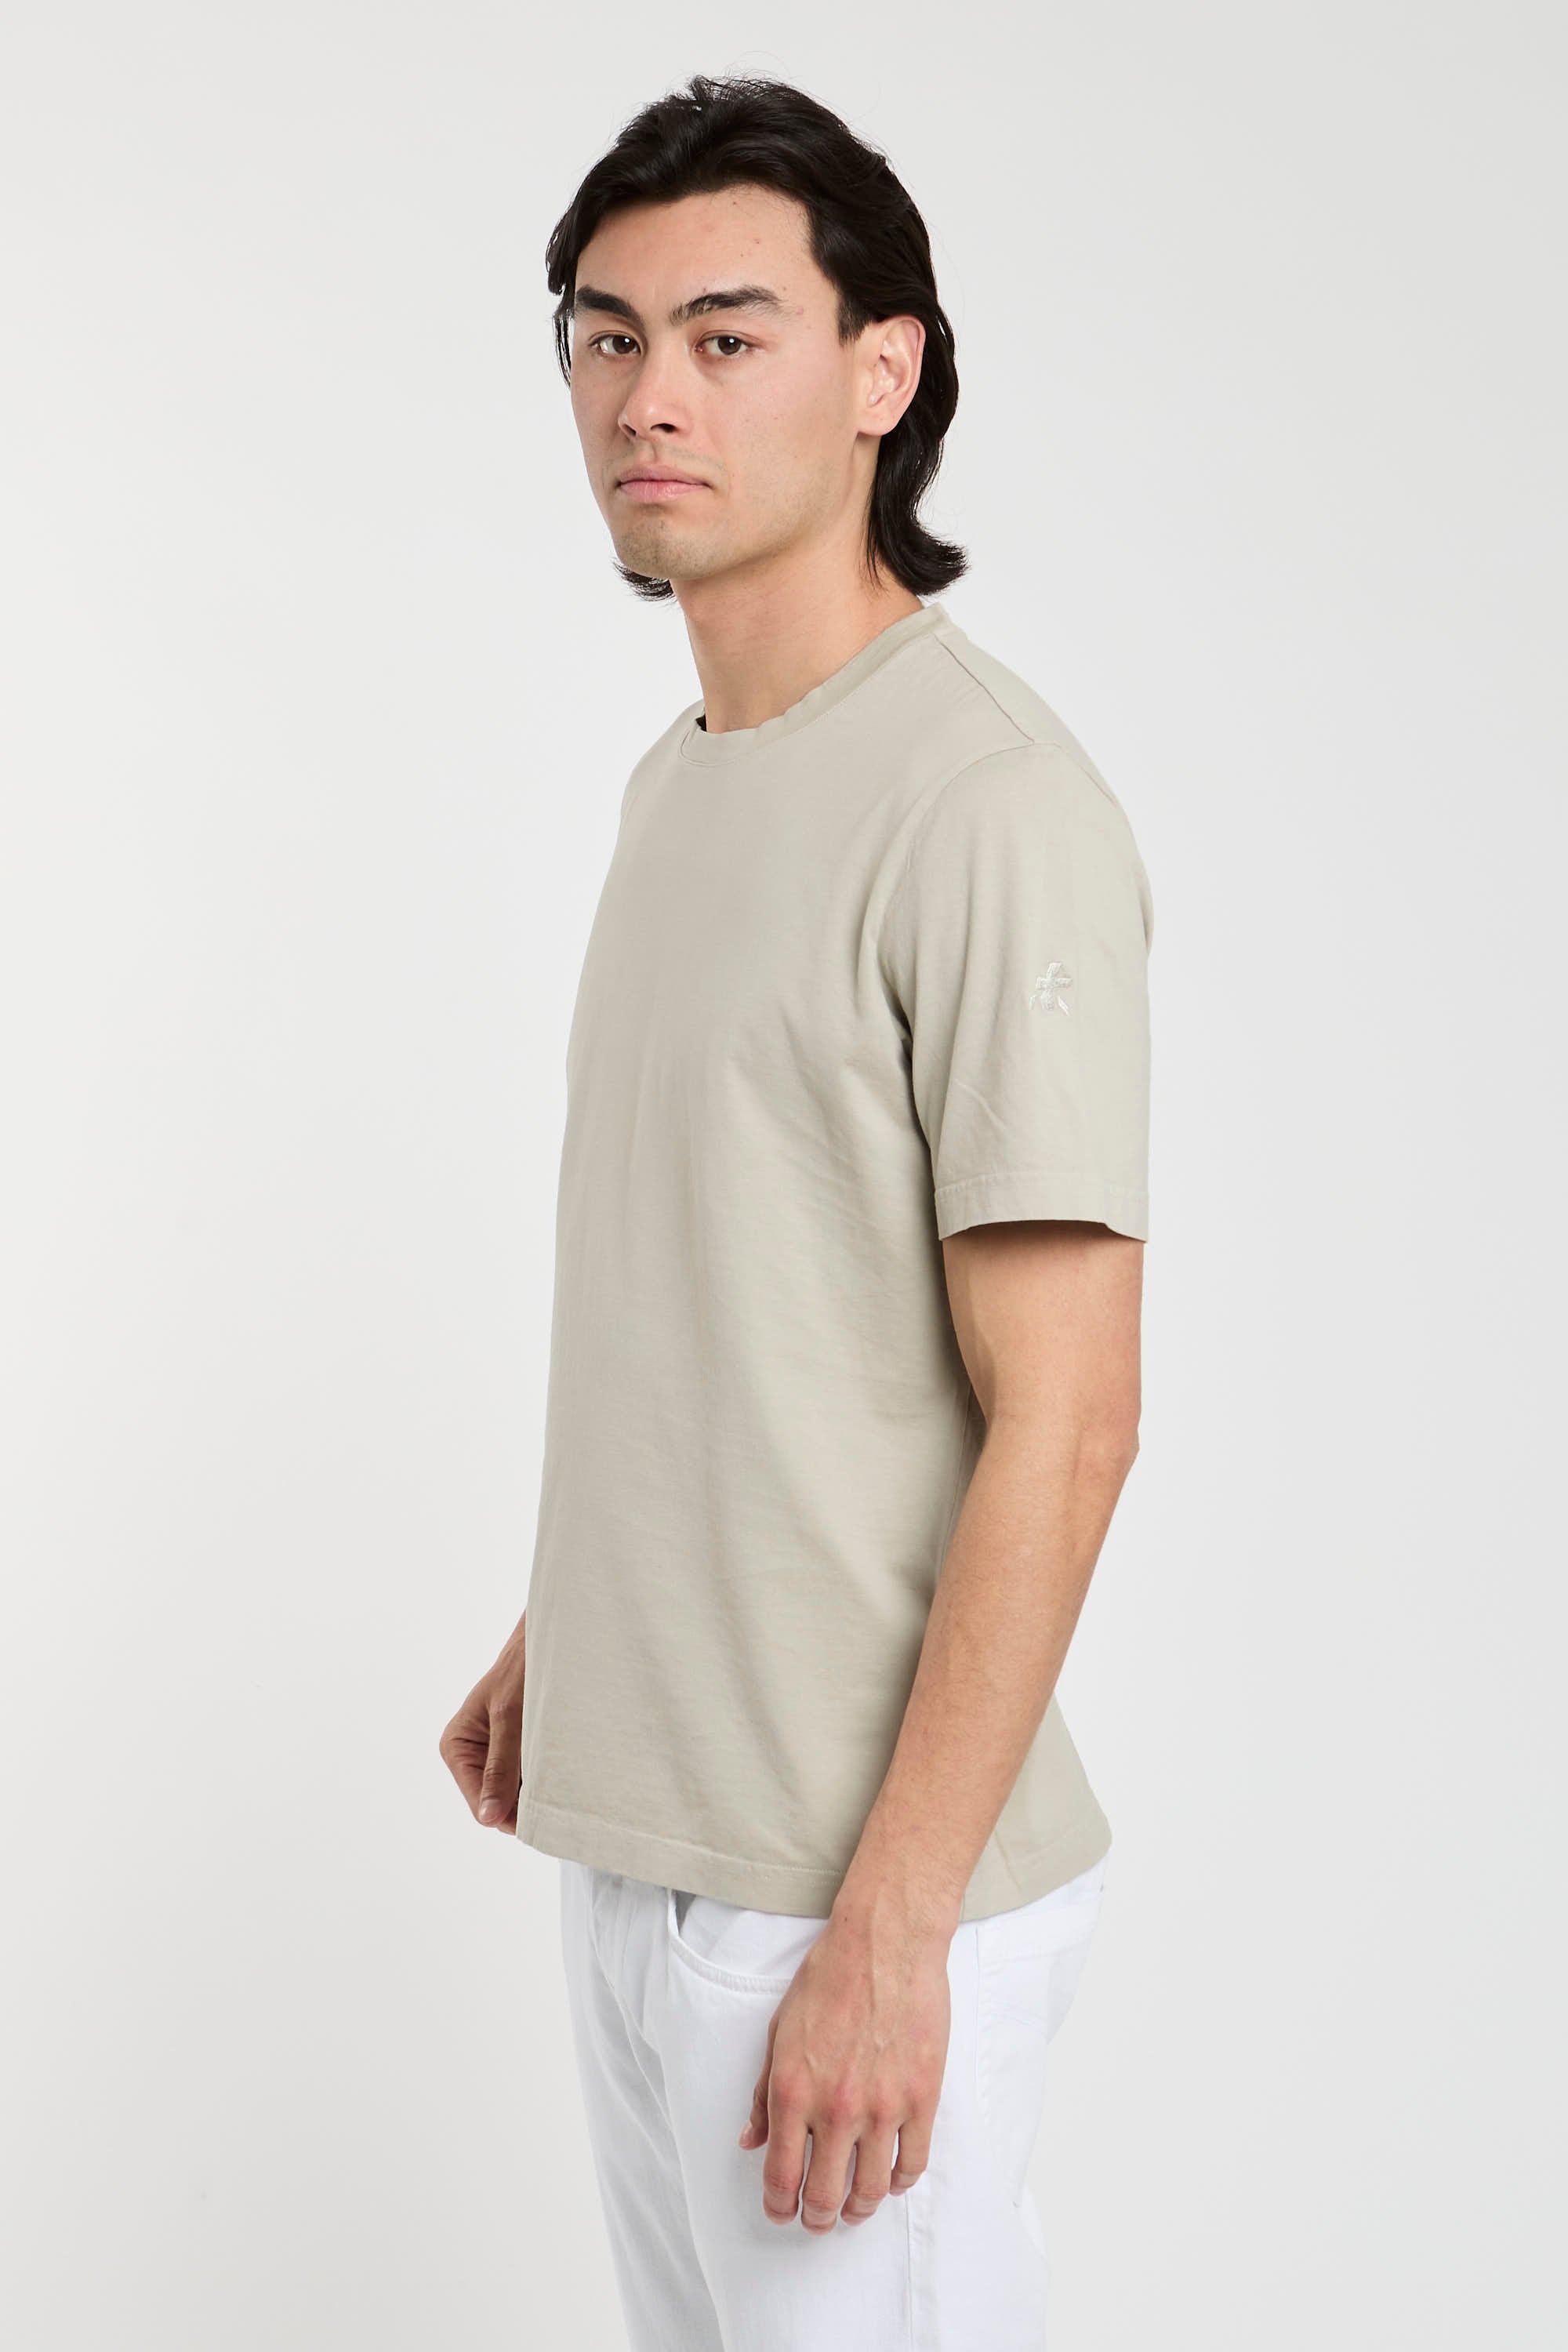 Premiata T-Shirt Jersey aus Baumwolle in Sandfarbe-6